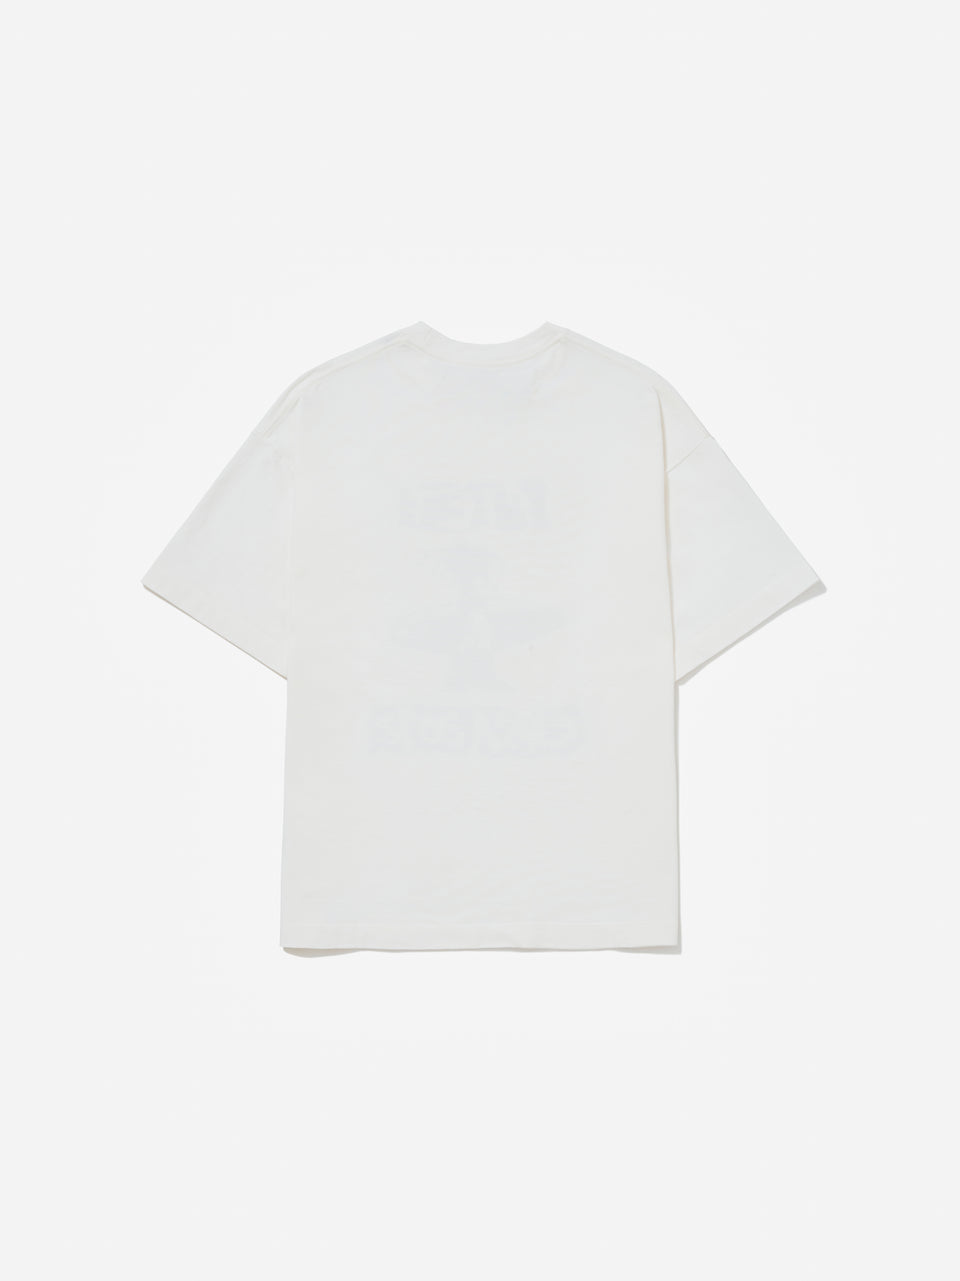 Soul T-Shirt - Bone White